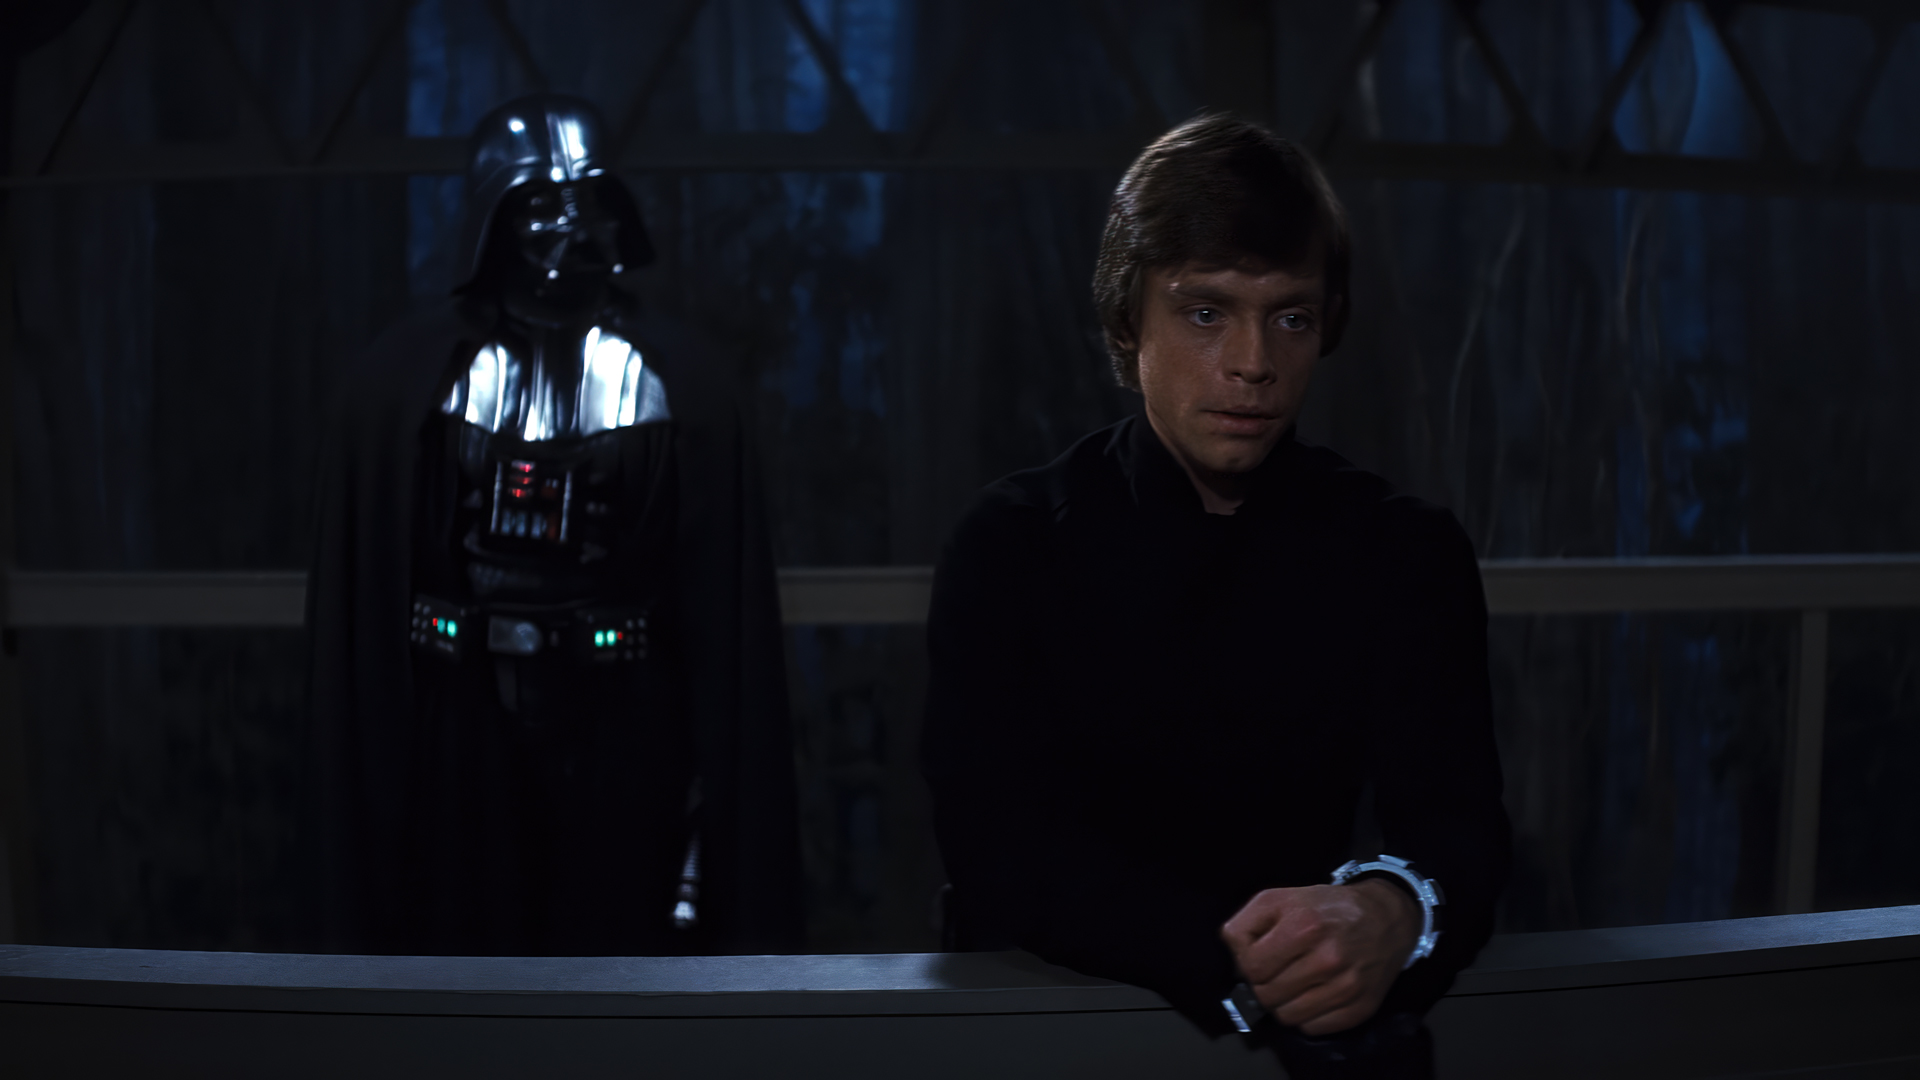 Star Wars Episode Vi The Return Of The Jedi Movies Film Stills Star Wars Luke Skywalker Darth Vader  1920x1080